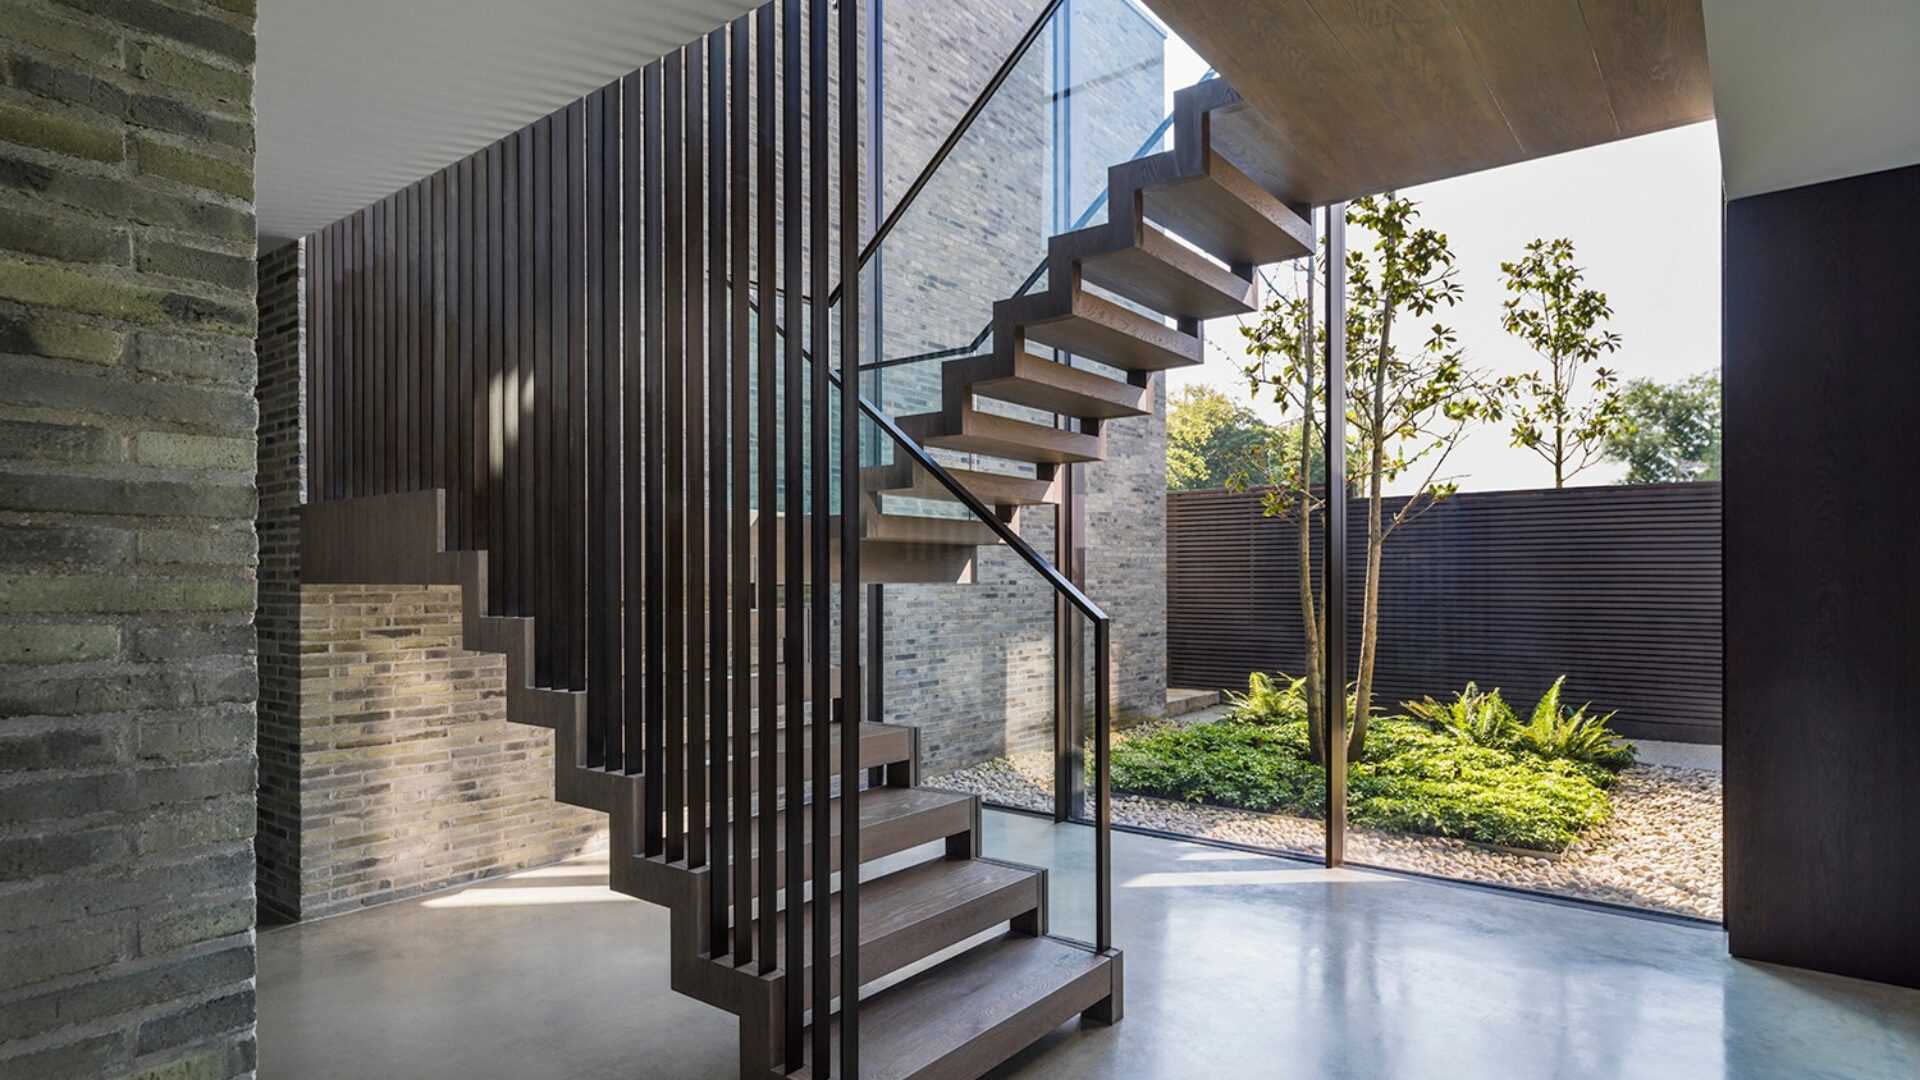 Cầu thang hiện đại với những bức tường gạch chịu nước màu xám.